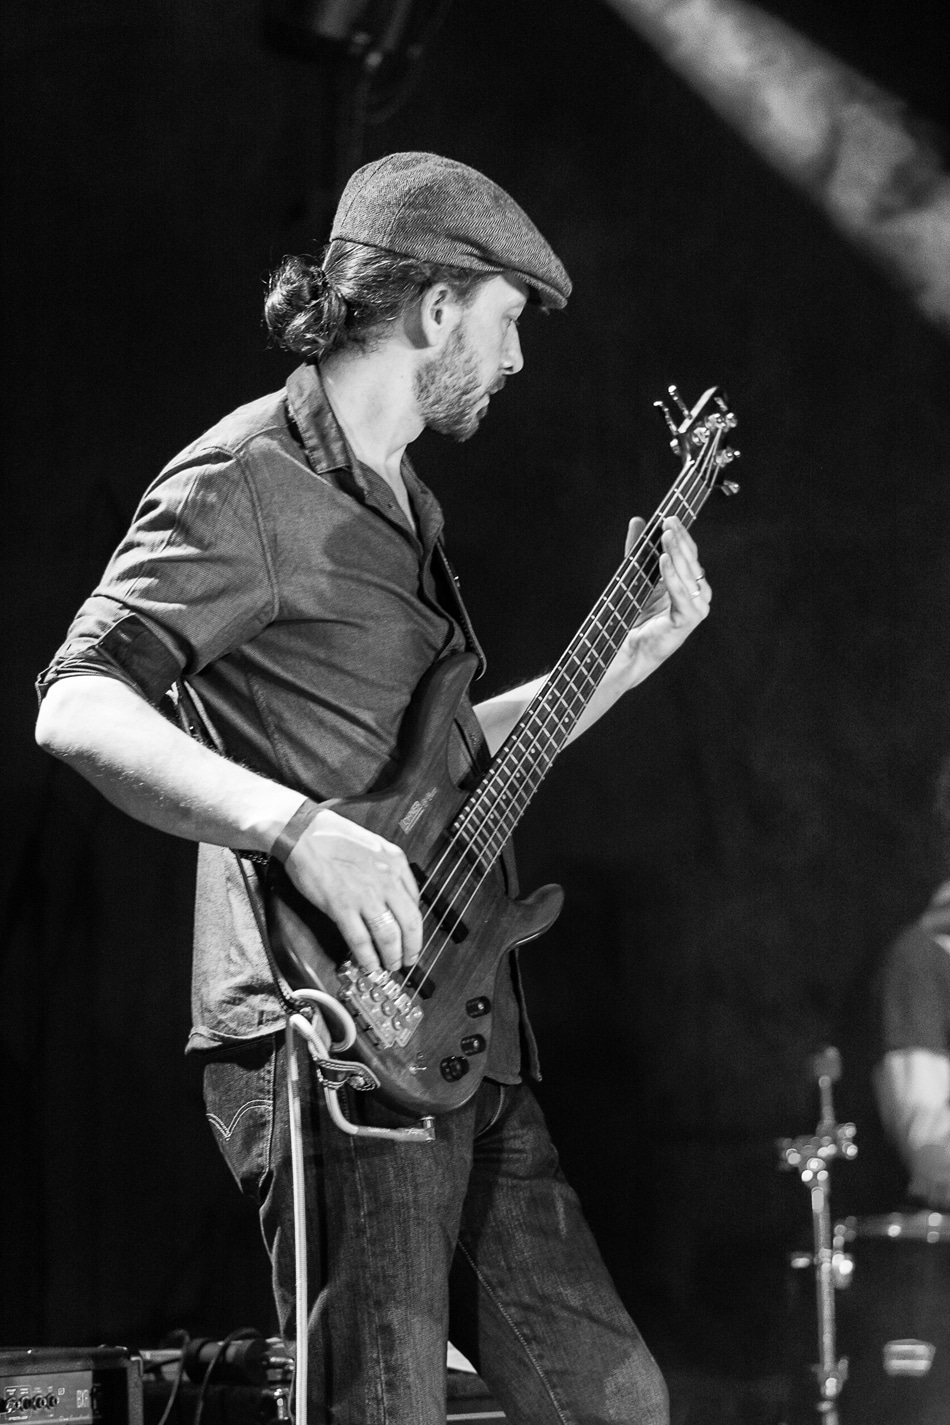 Kivala en concert à Samois-sur-Seine